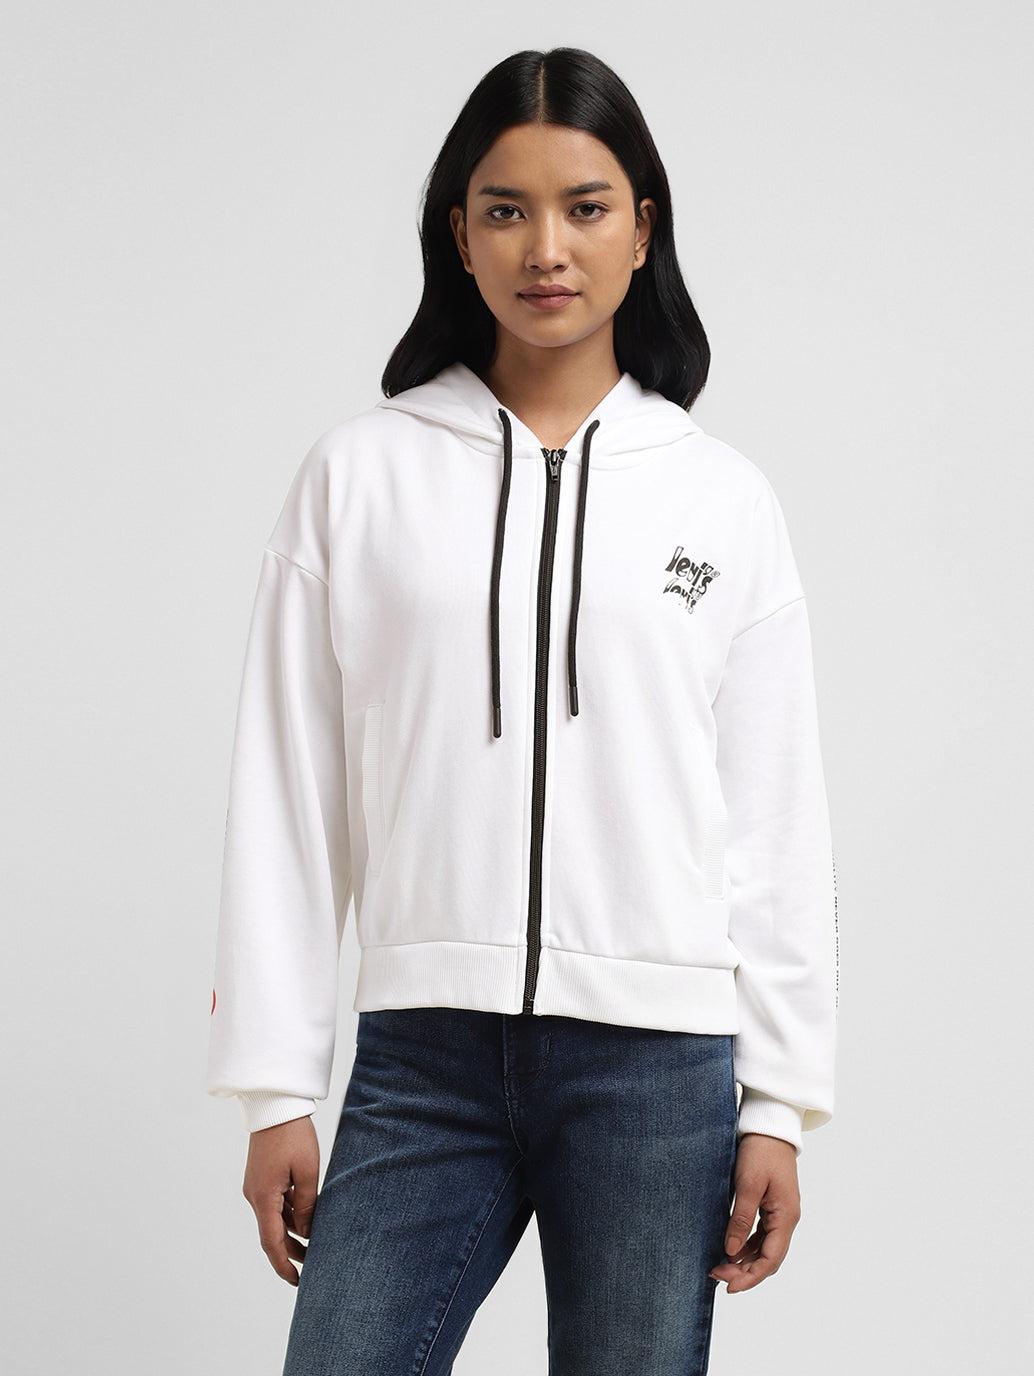 women's-graphic-print-white-hooded-sweatshirt